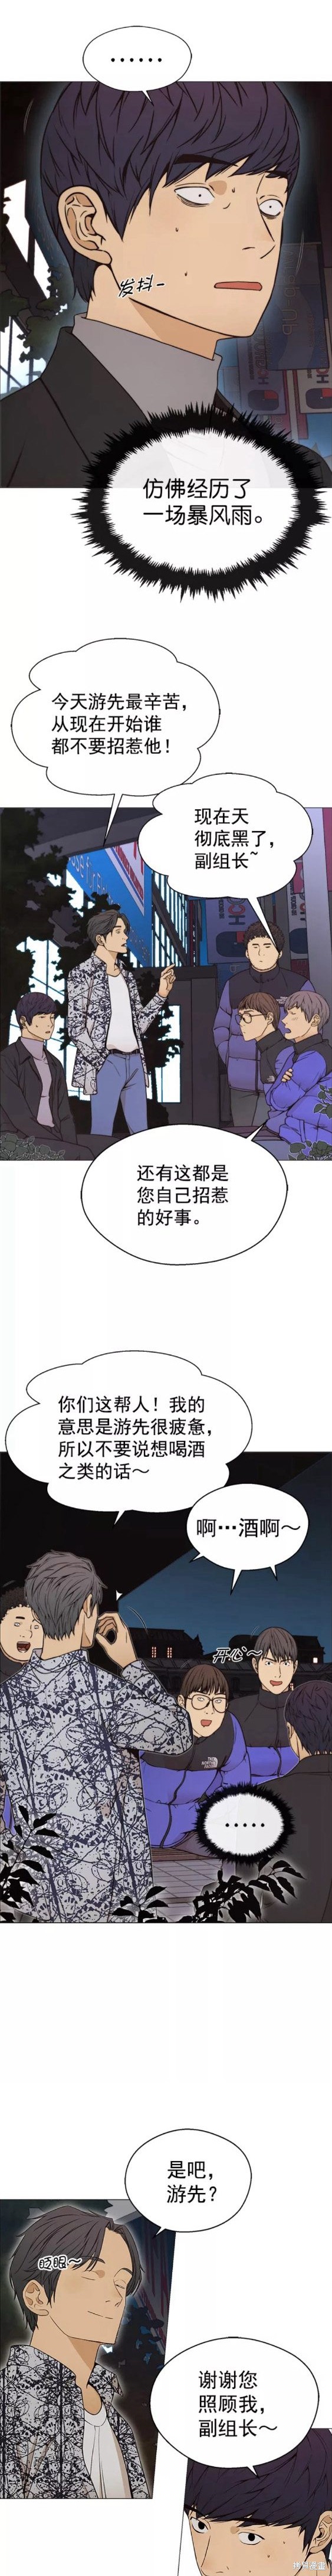 男子汉漫画,第114话14图